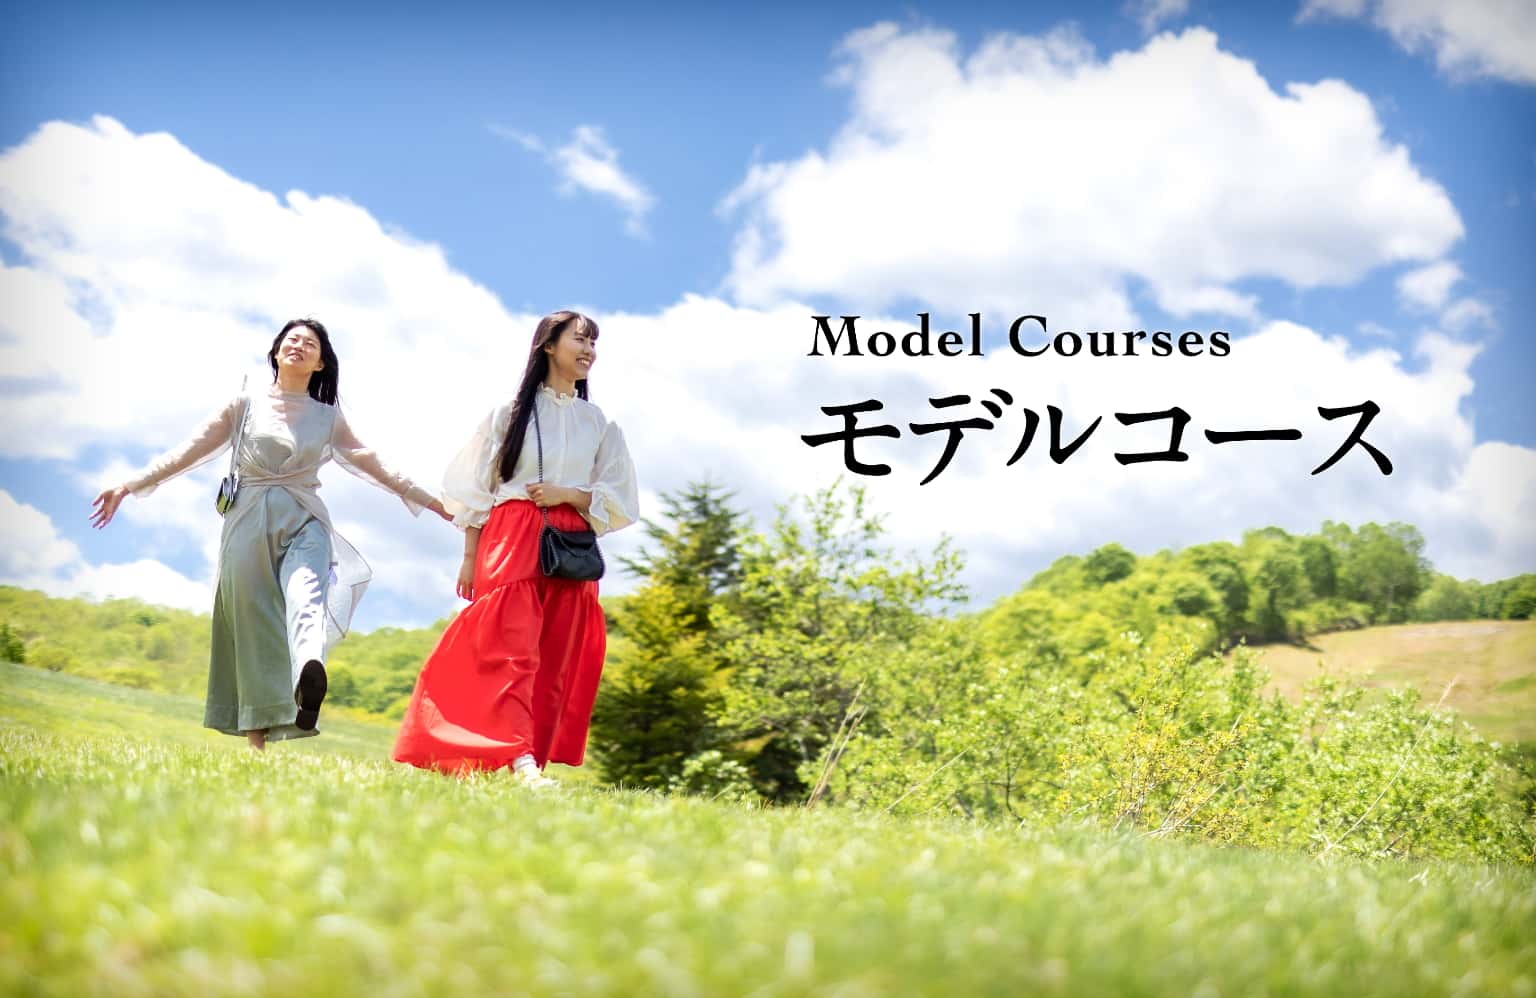 モデルコース - Model Courses